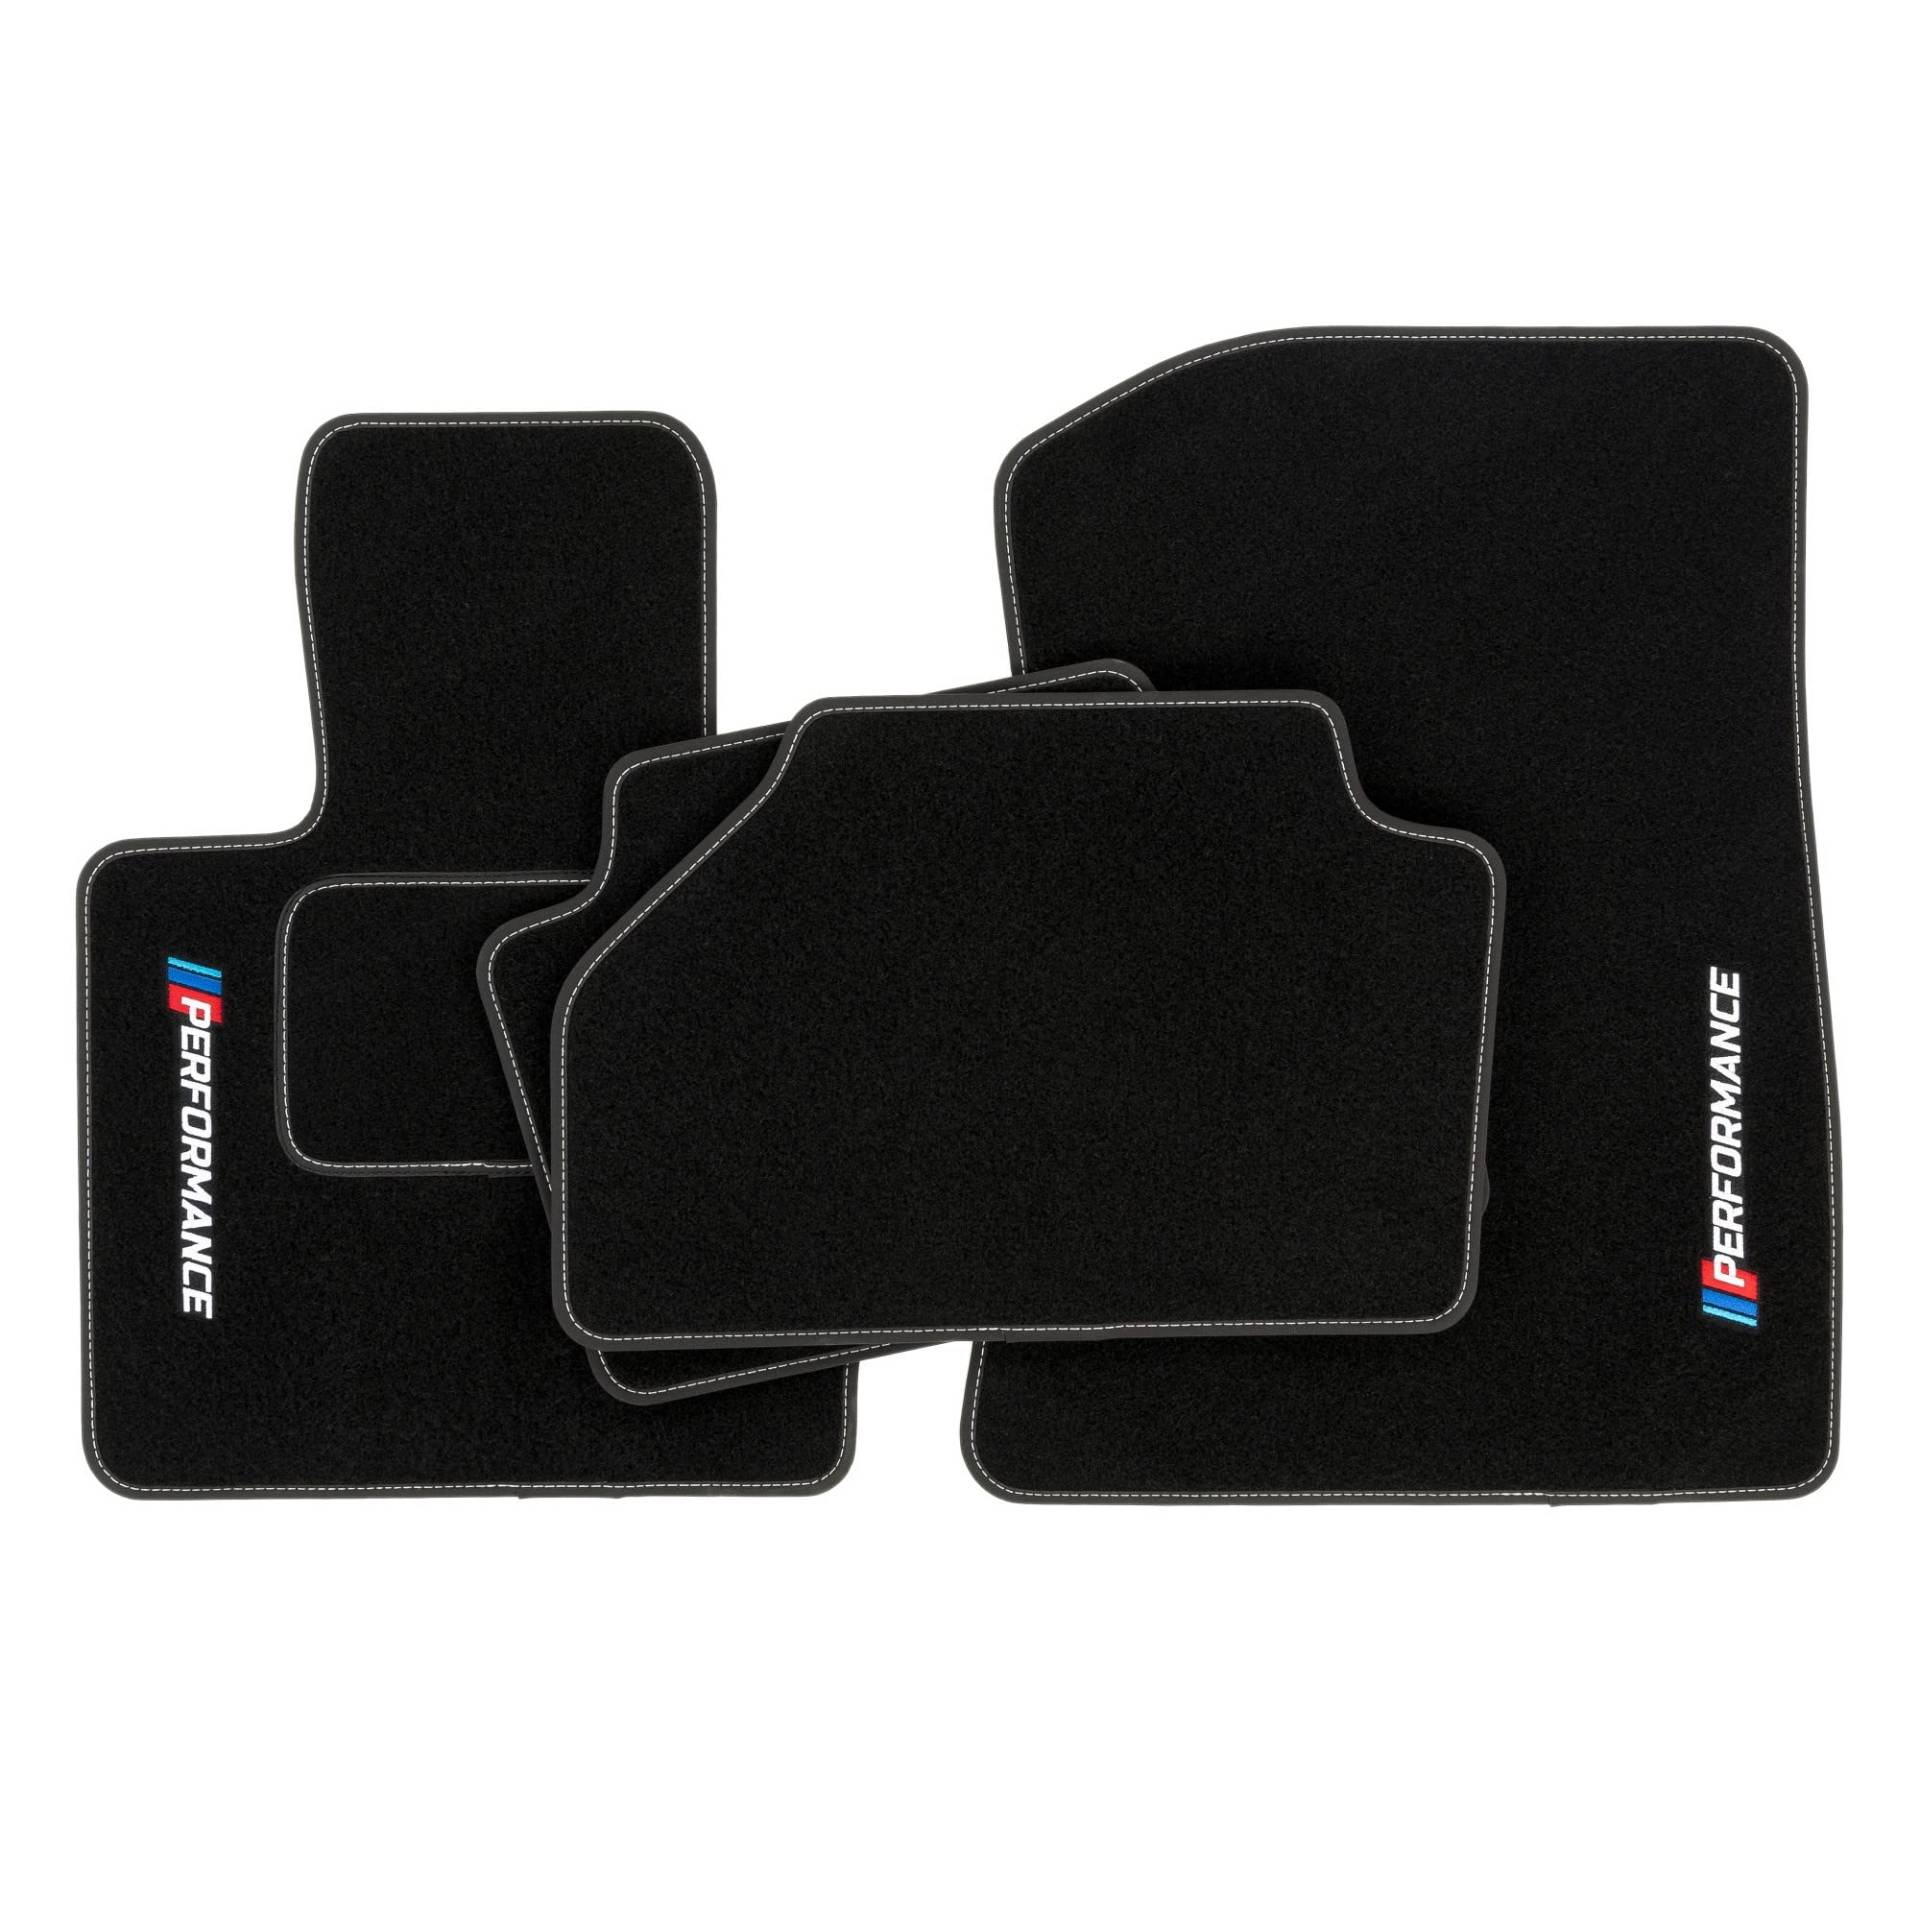 PERFORMANCE Personalisierte Velours-Fußmatten für BMW X3 F25 2011-2017 - Personalisierte, Matt, Weiß - halten Sie Ihr Auto sauber und komfortabel mit unseren Fußmatten von PERFORMANCE